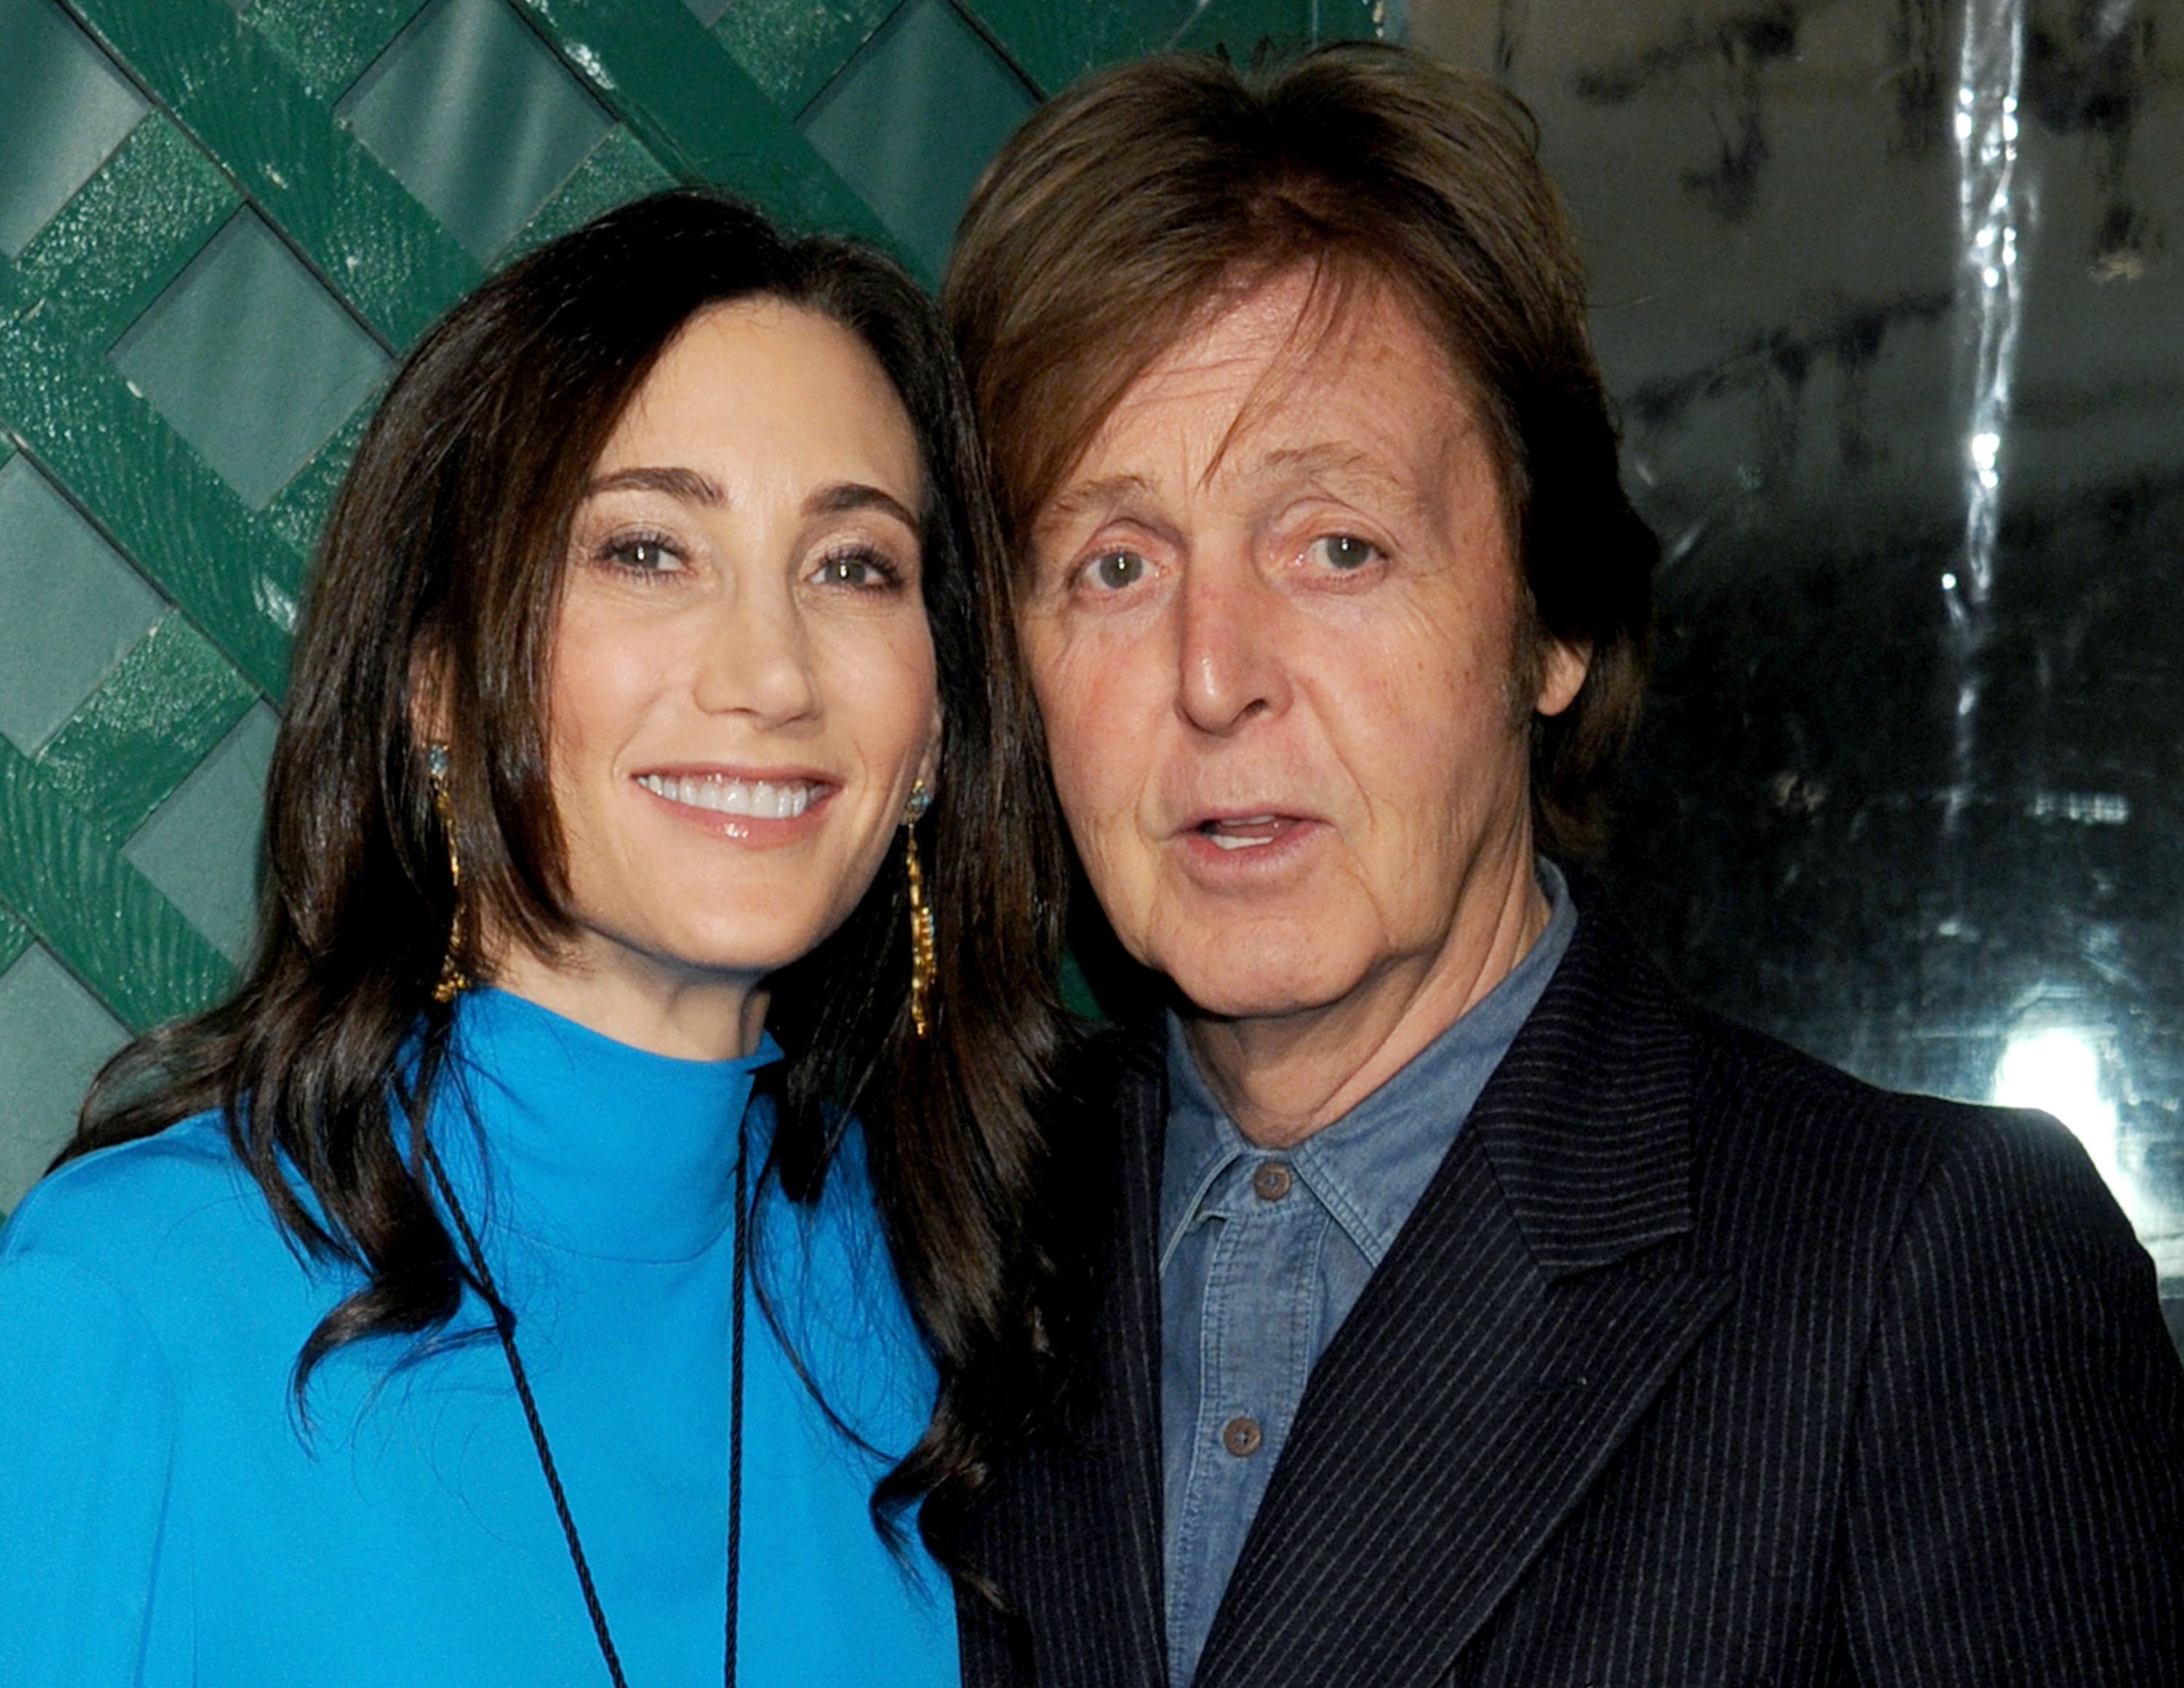 Paul McCartney y su mujer Nancy Shevell en el estreno mundial del vídeo "My Valentine" el 13 de abril de 2012. | Foto: Getty Images